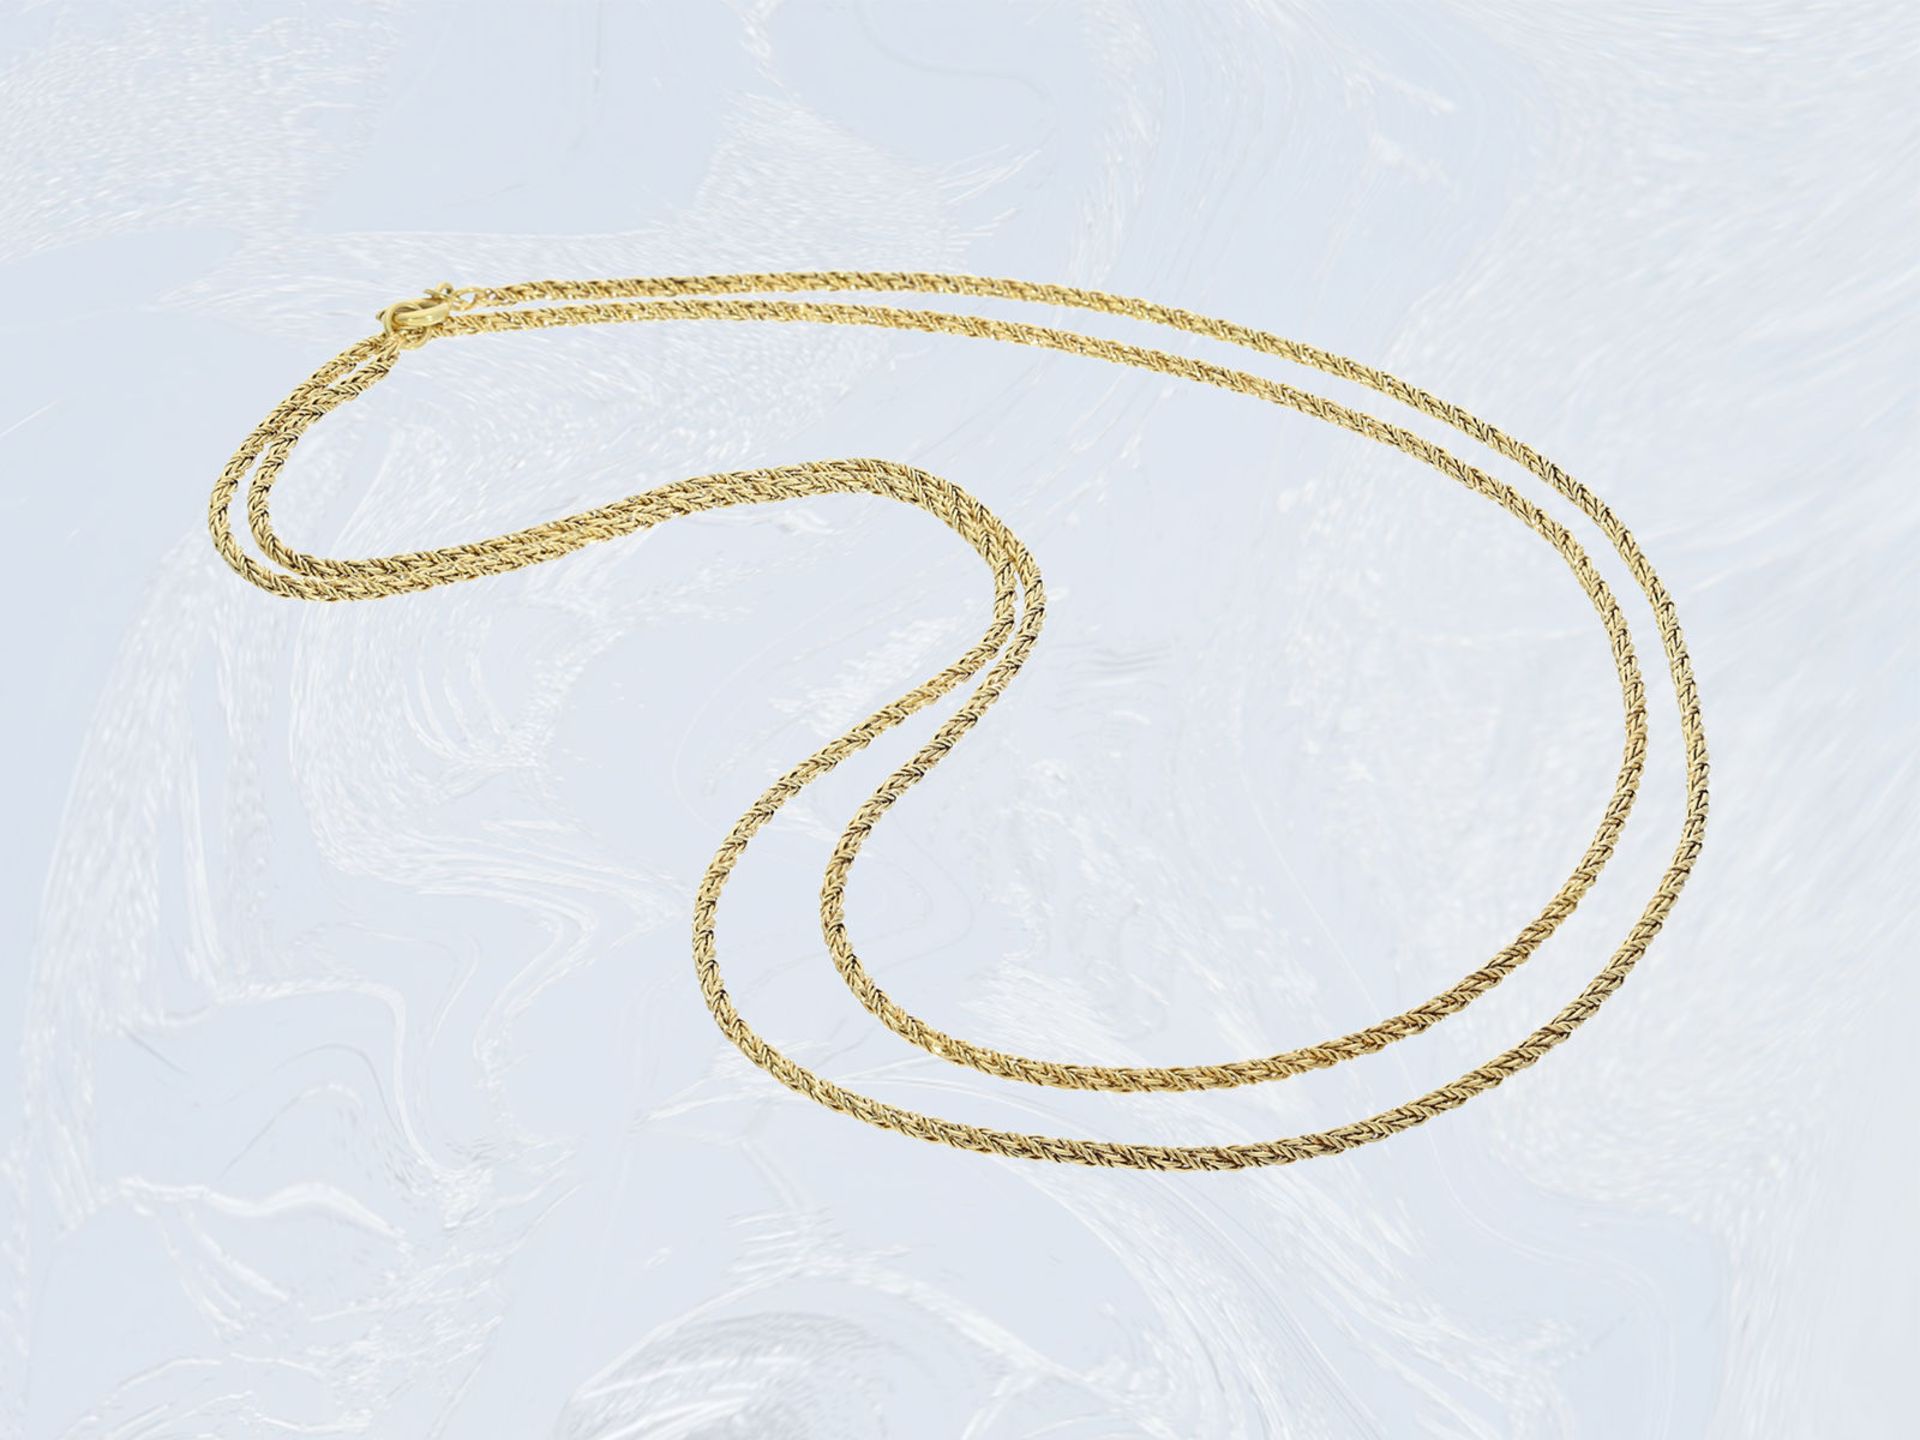 Kette/Collier: ungetragene, lange 14K Goldkette im ZopfmusterCa. 80cm lang, ca. 12g, 14k Gelbgold,